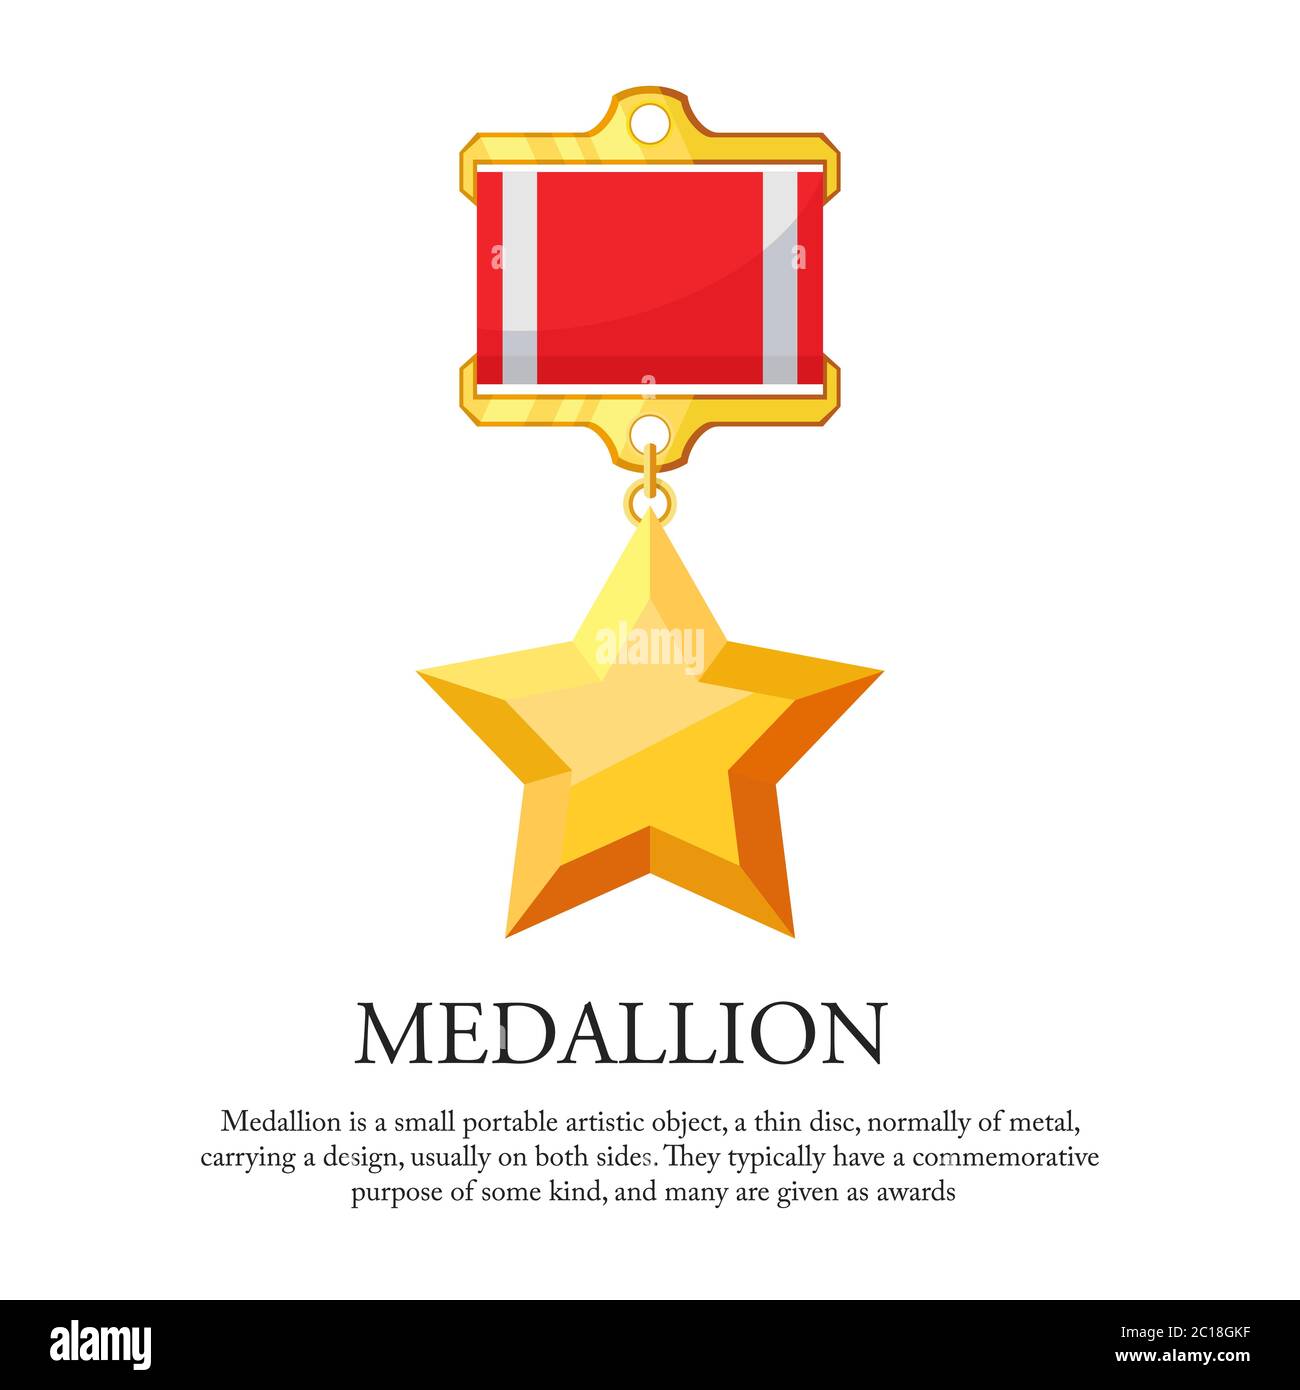 Illustration vectorielle d'une médaille d'étoile. Convient pour la visualisation des médailles d'or, des lauréats, de la meilleure appréciation et de l'icône de la médaille de service. Illustration de Vecteur